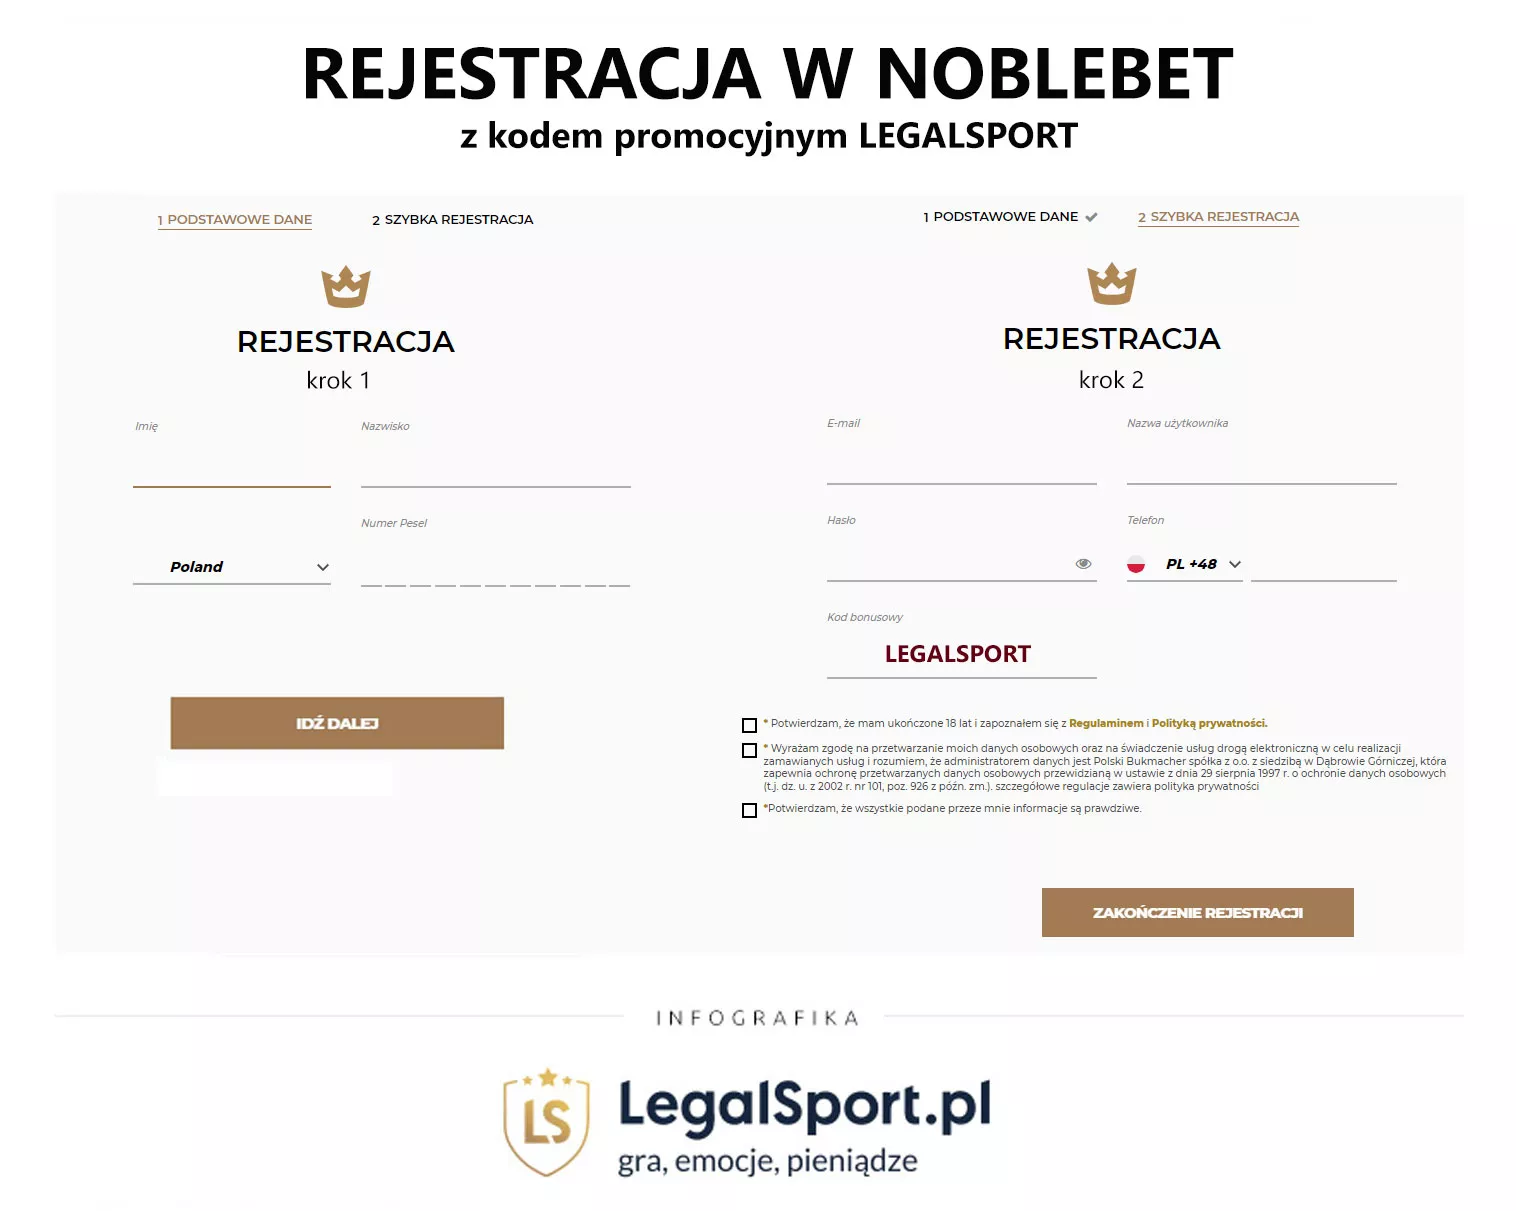 Rejestracja w Noble daje prawo odbioru freebetów za 53 zł